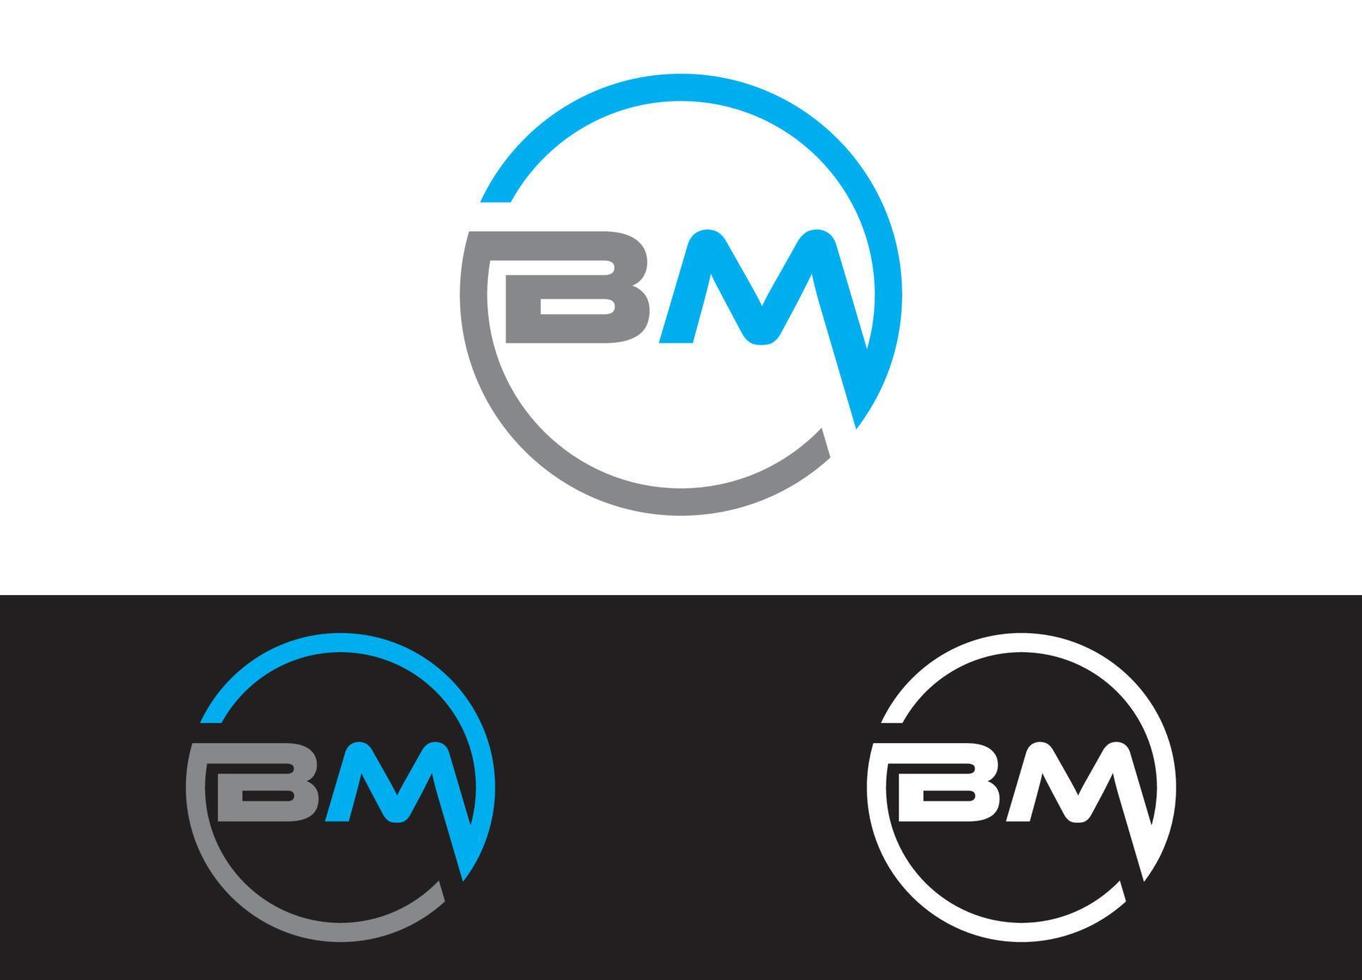 Plantilla de imagen vectorial de diseño de logotipo o icono de letra inicial bm vector